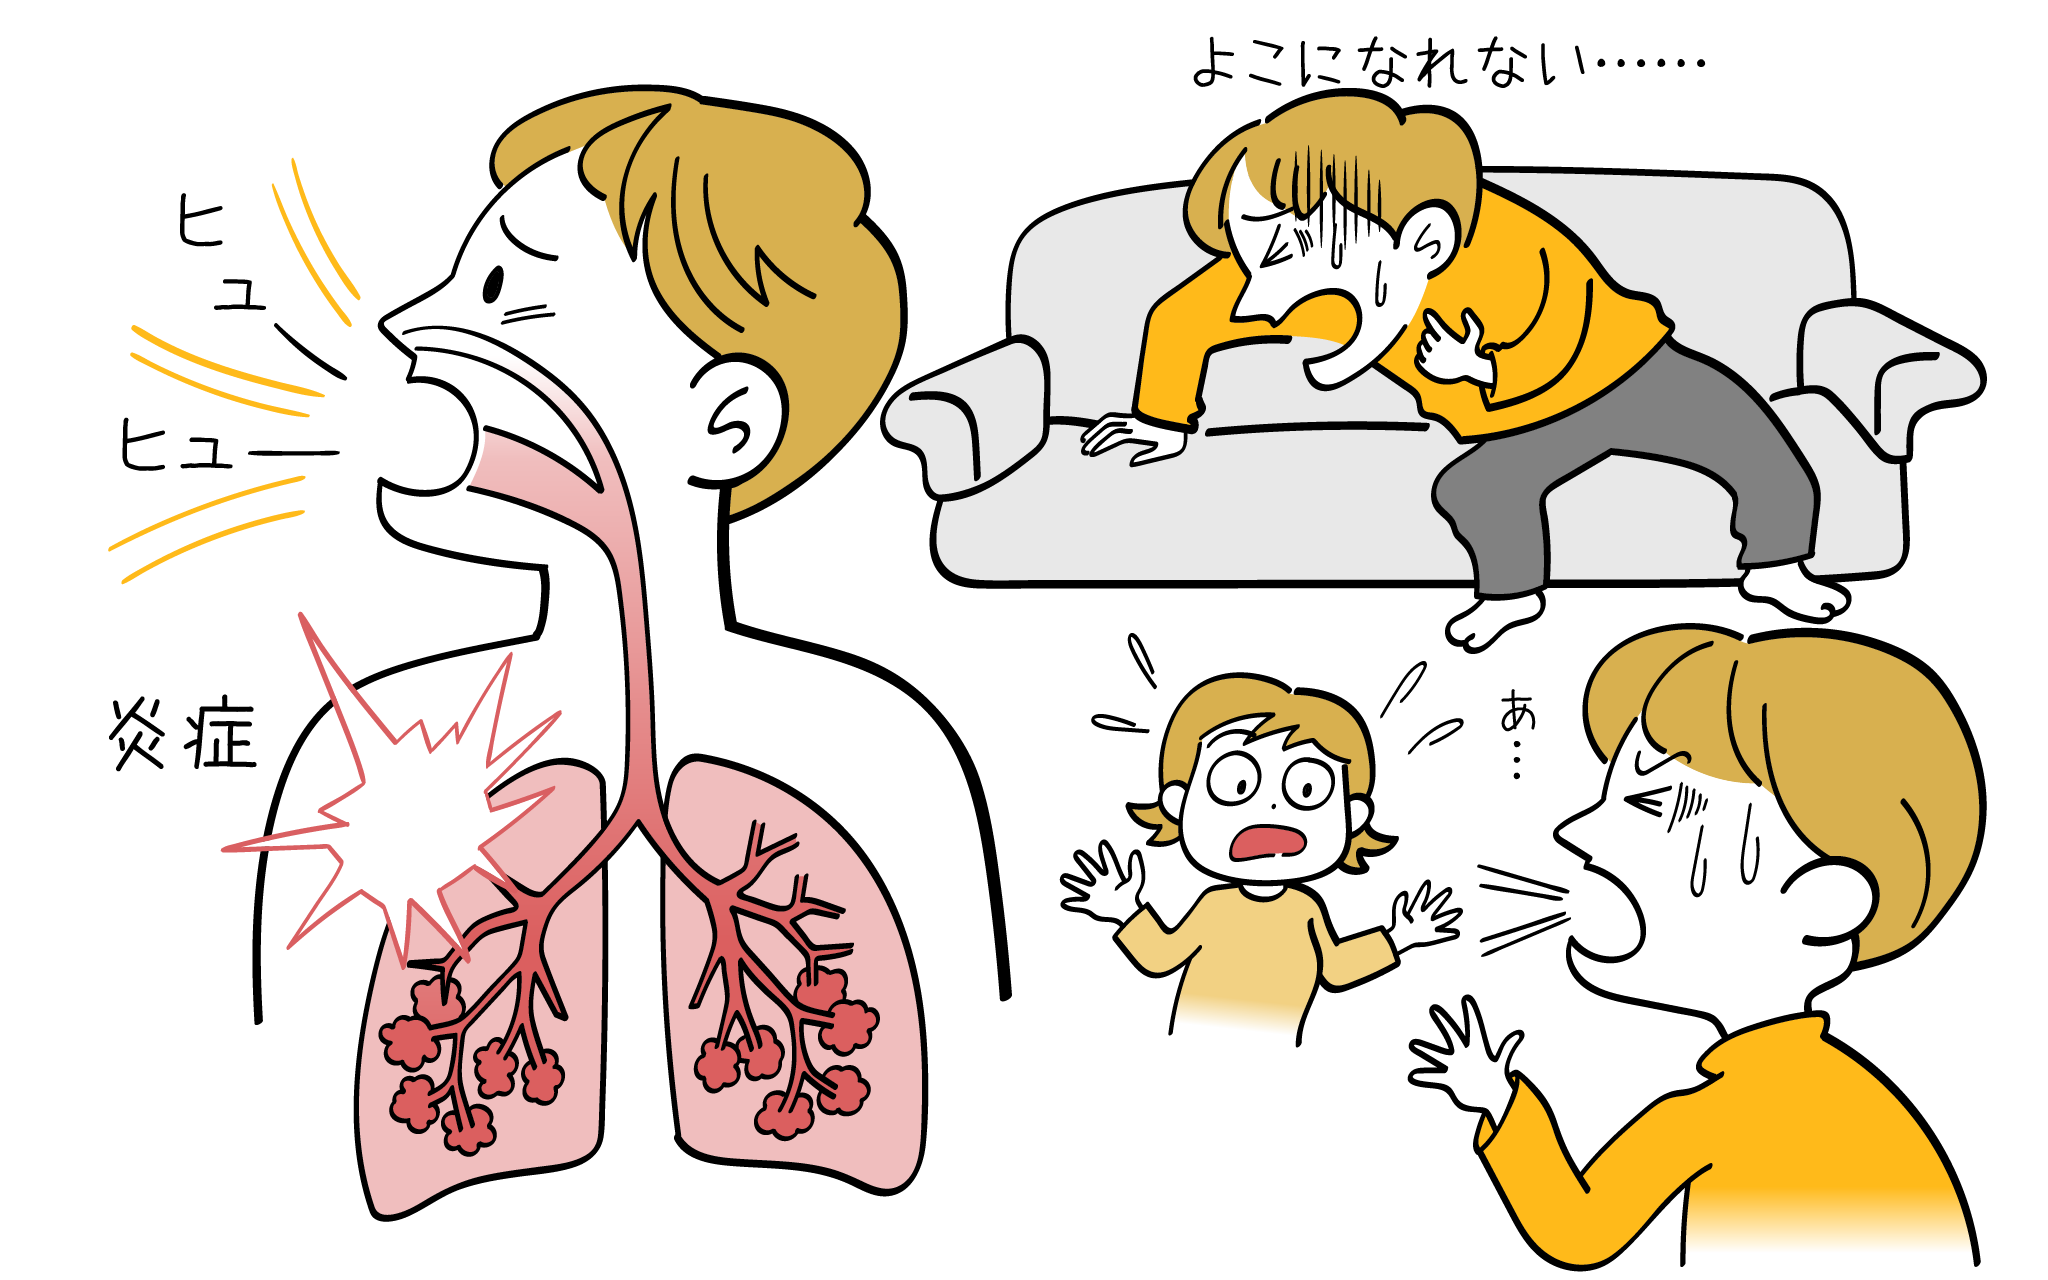 気管支喘息の症状について、内科専門医が詳しく解説します。